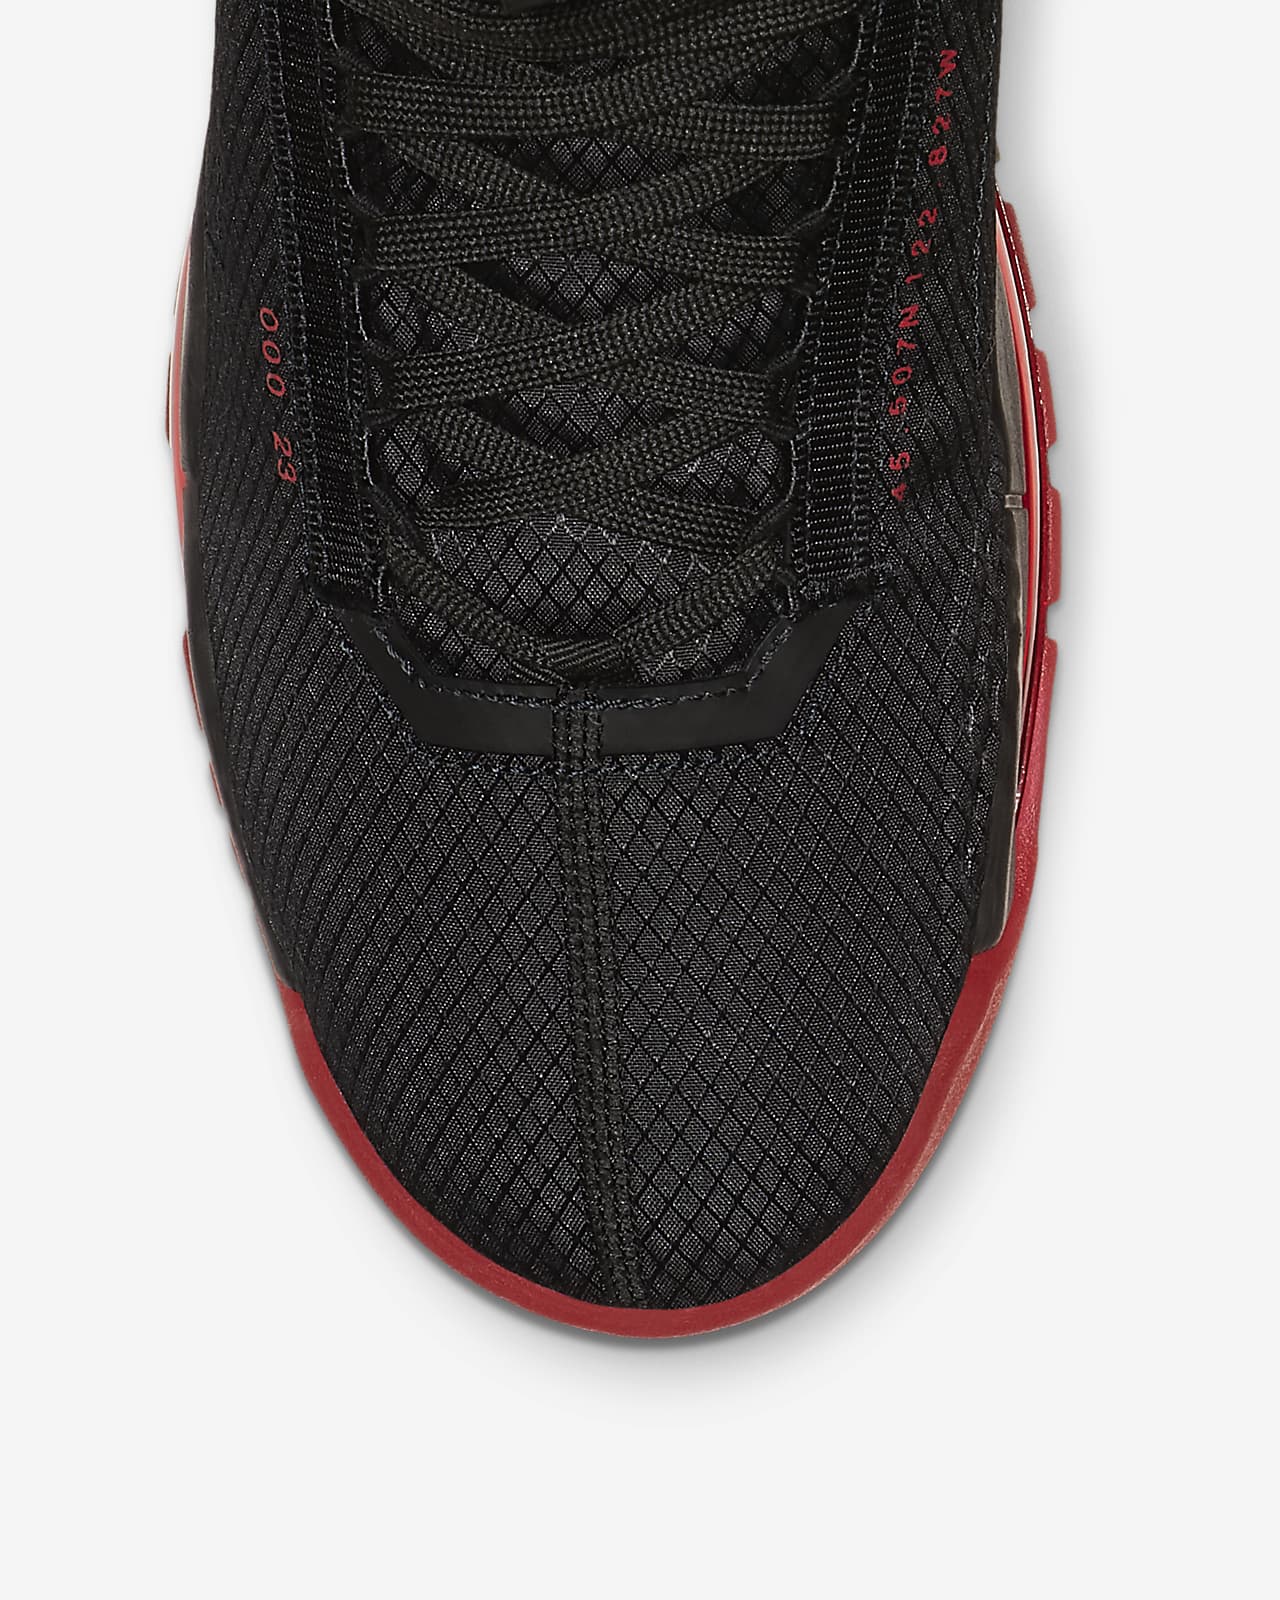 Jordan Proto-Max 720 Shoe. Nike PH